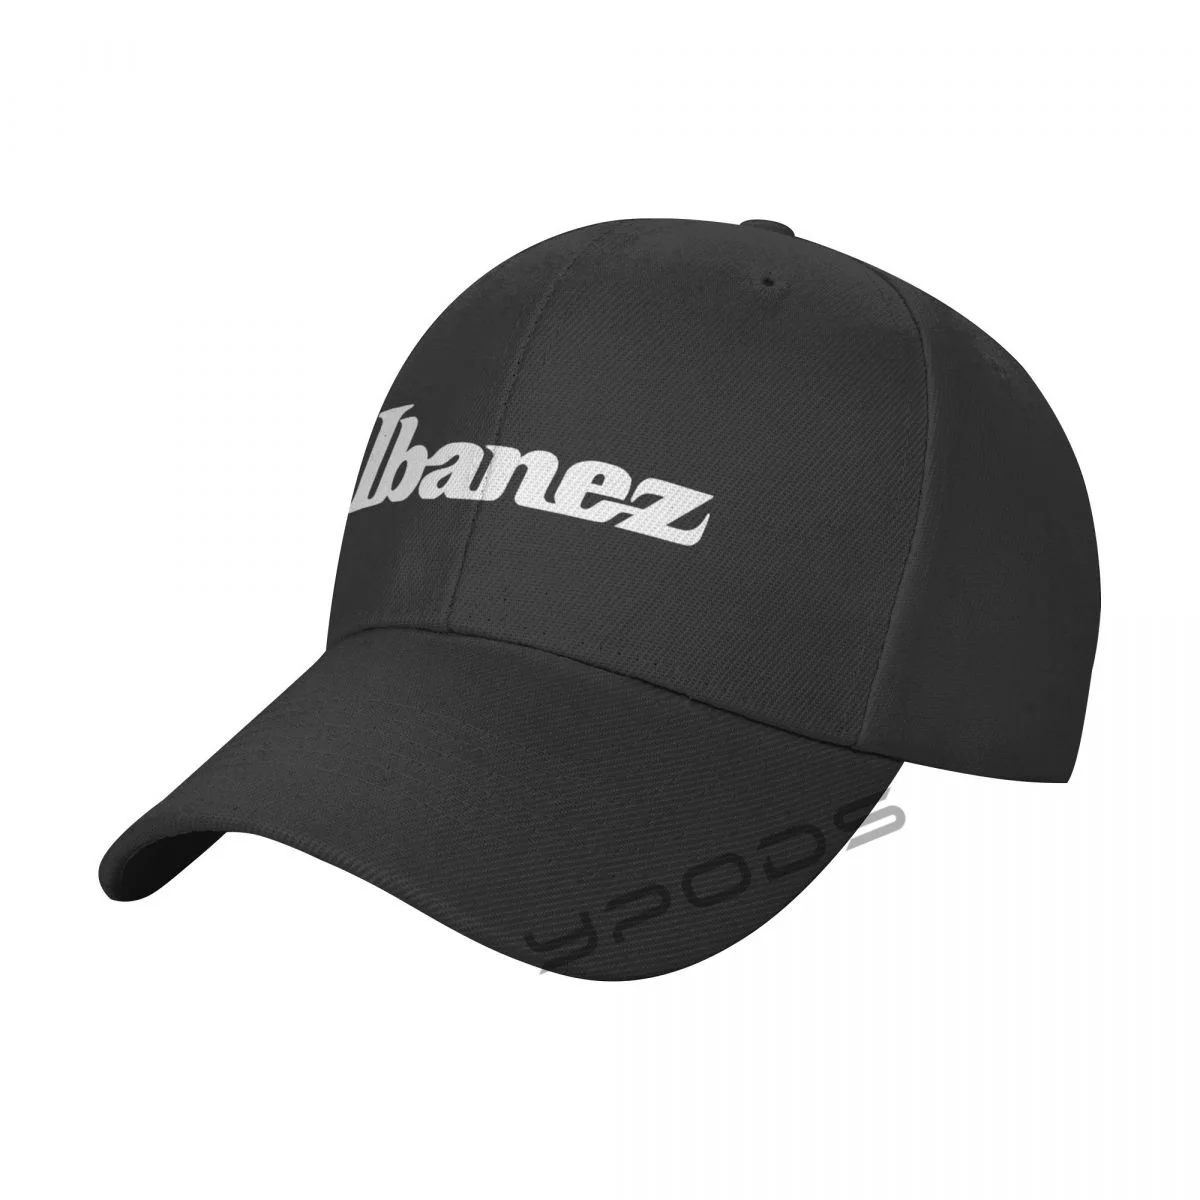 

Бейсболка Ibanez для занятий спортом на открытом воздухе, модные регулируемые мужские и женские кепки на весну и лето